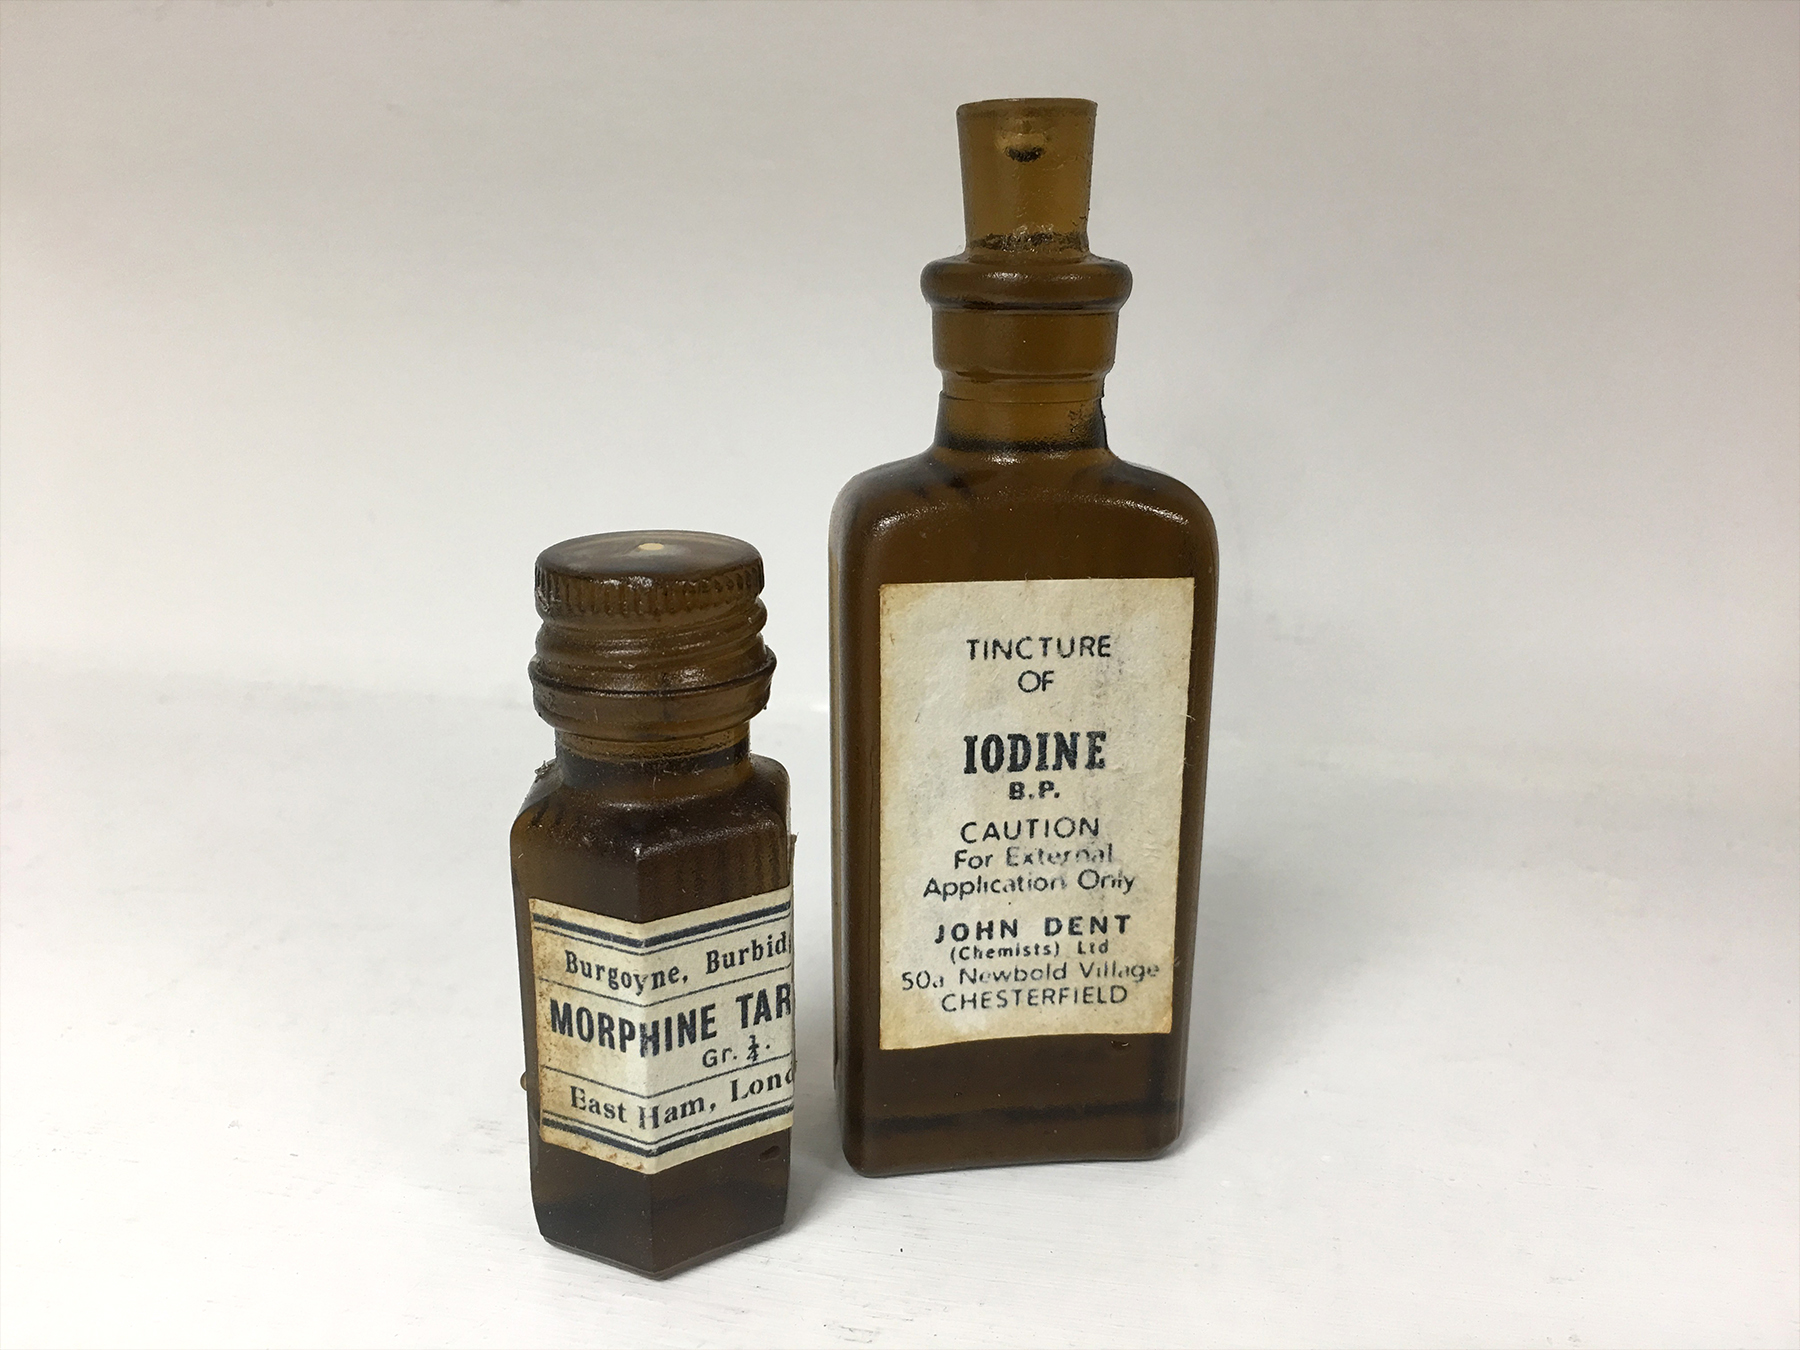 1917 – Medicine bottles